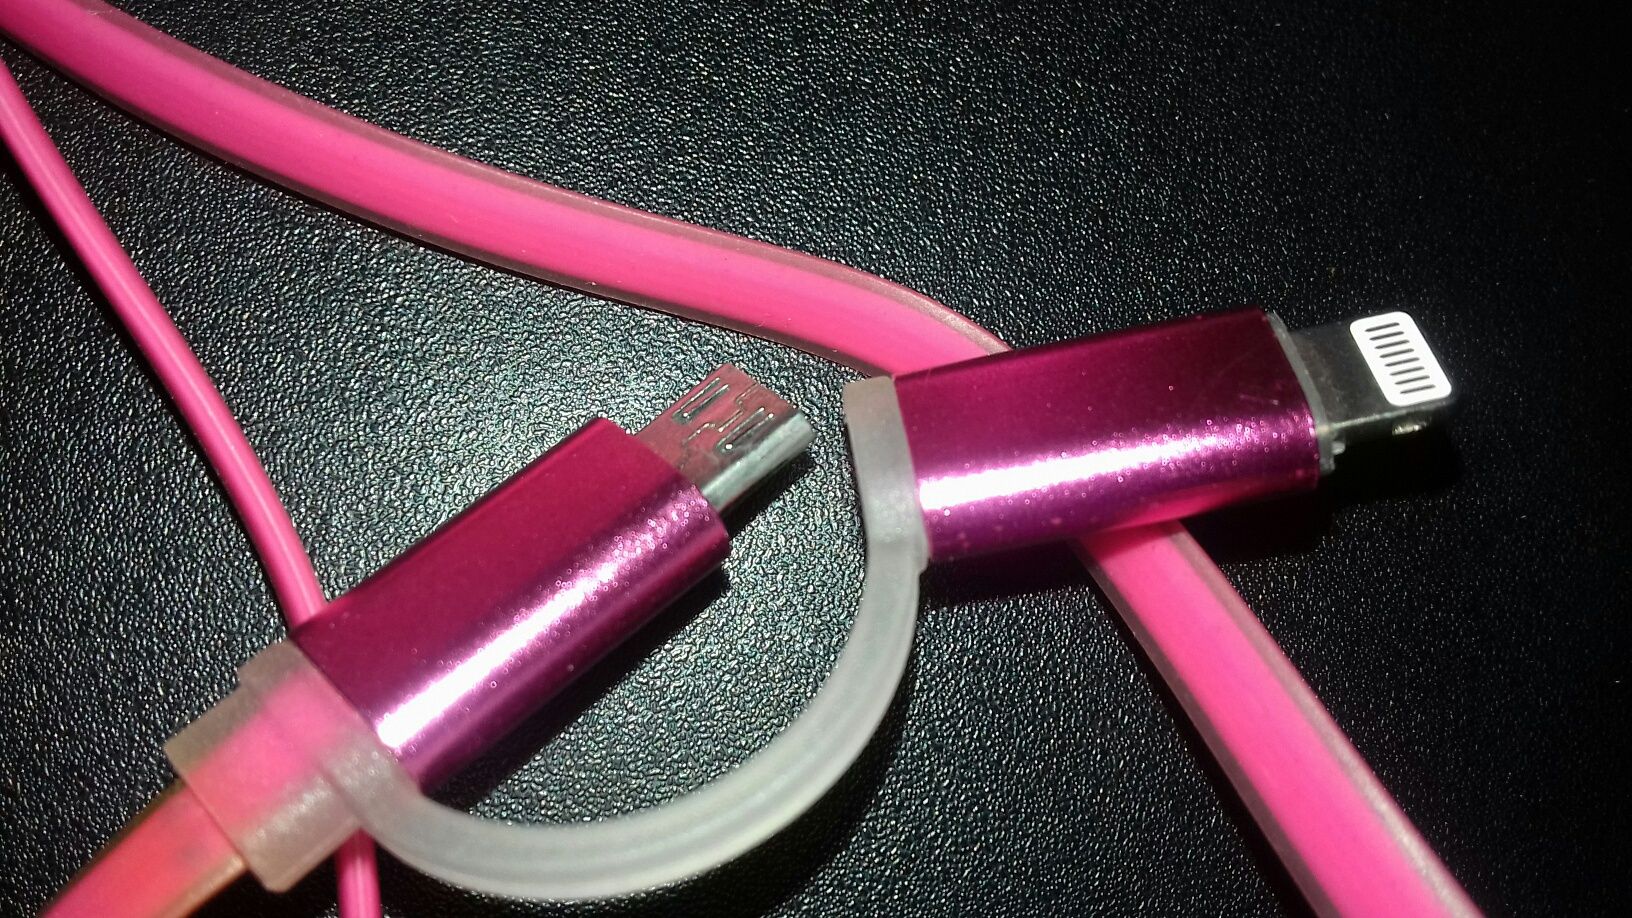 Шнур USB б/у розовый